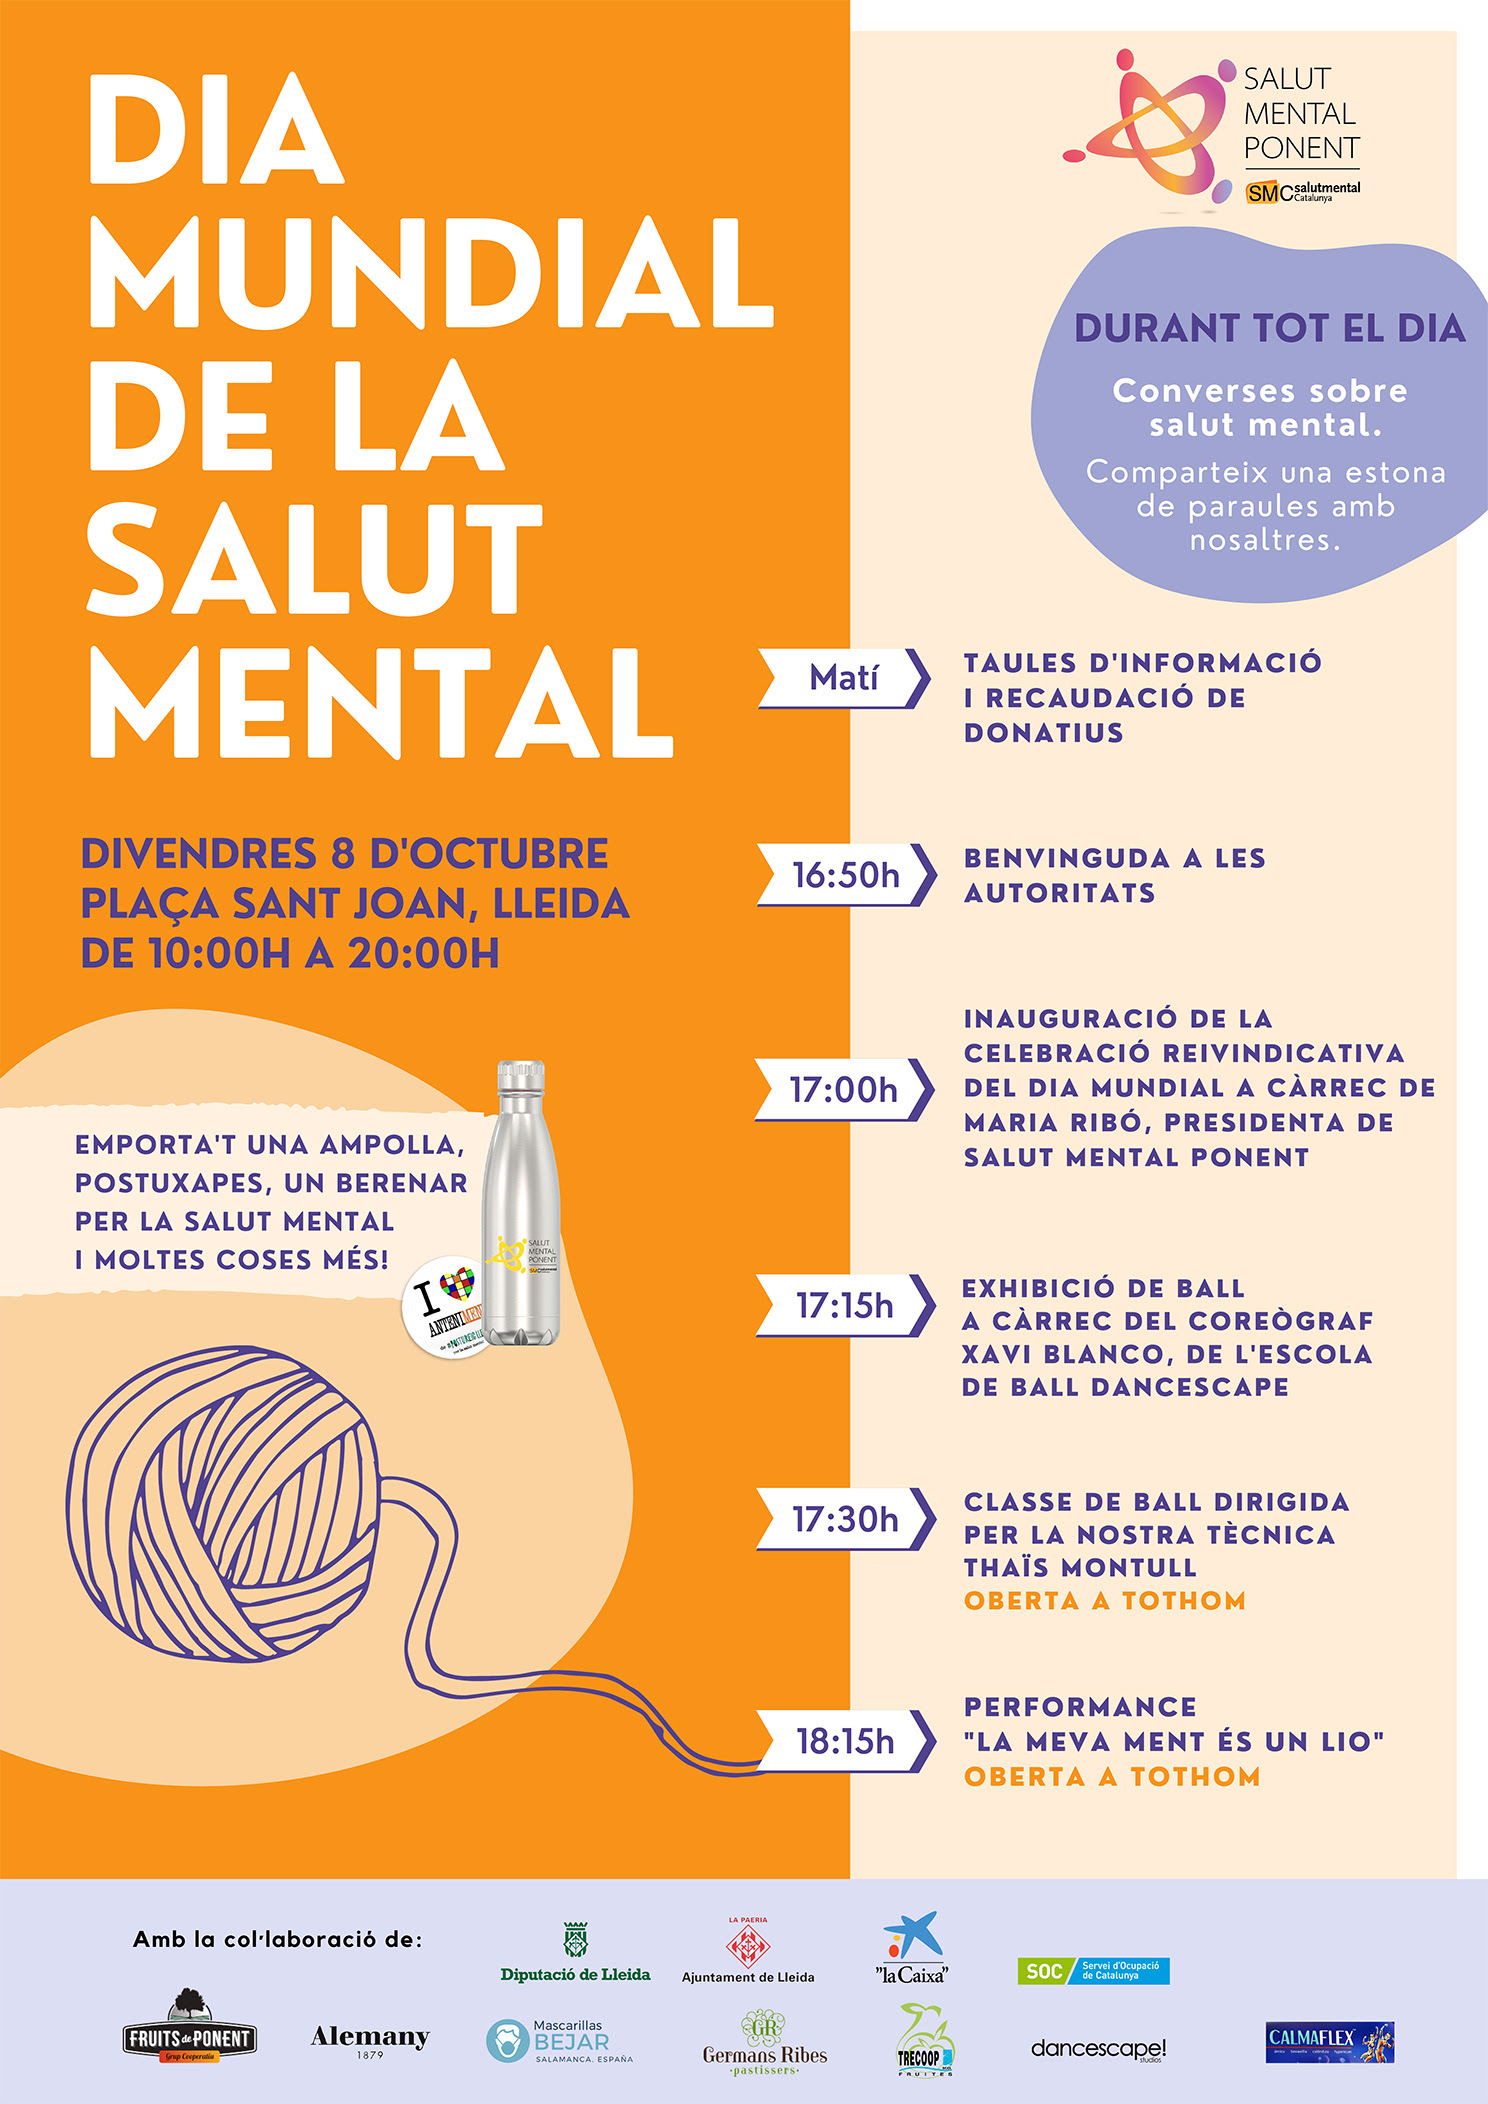 Cartell oficial de la jornada de Salut Mental a Lleida